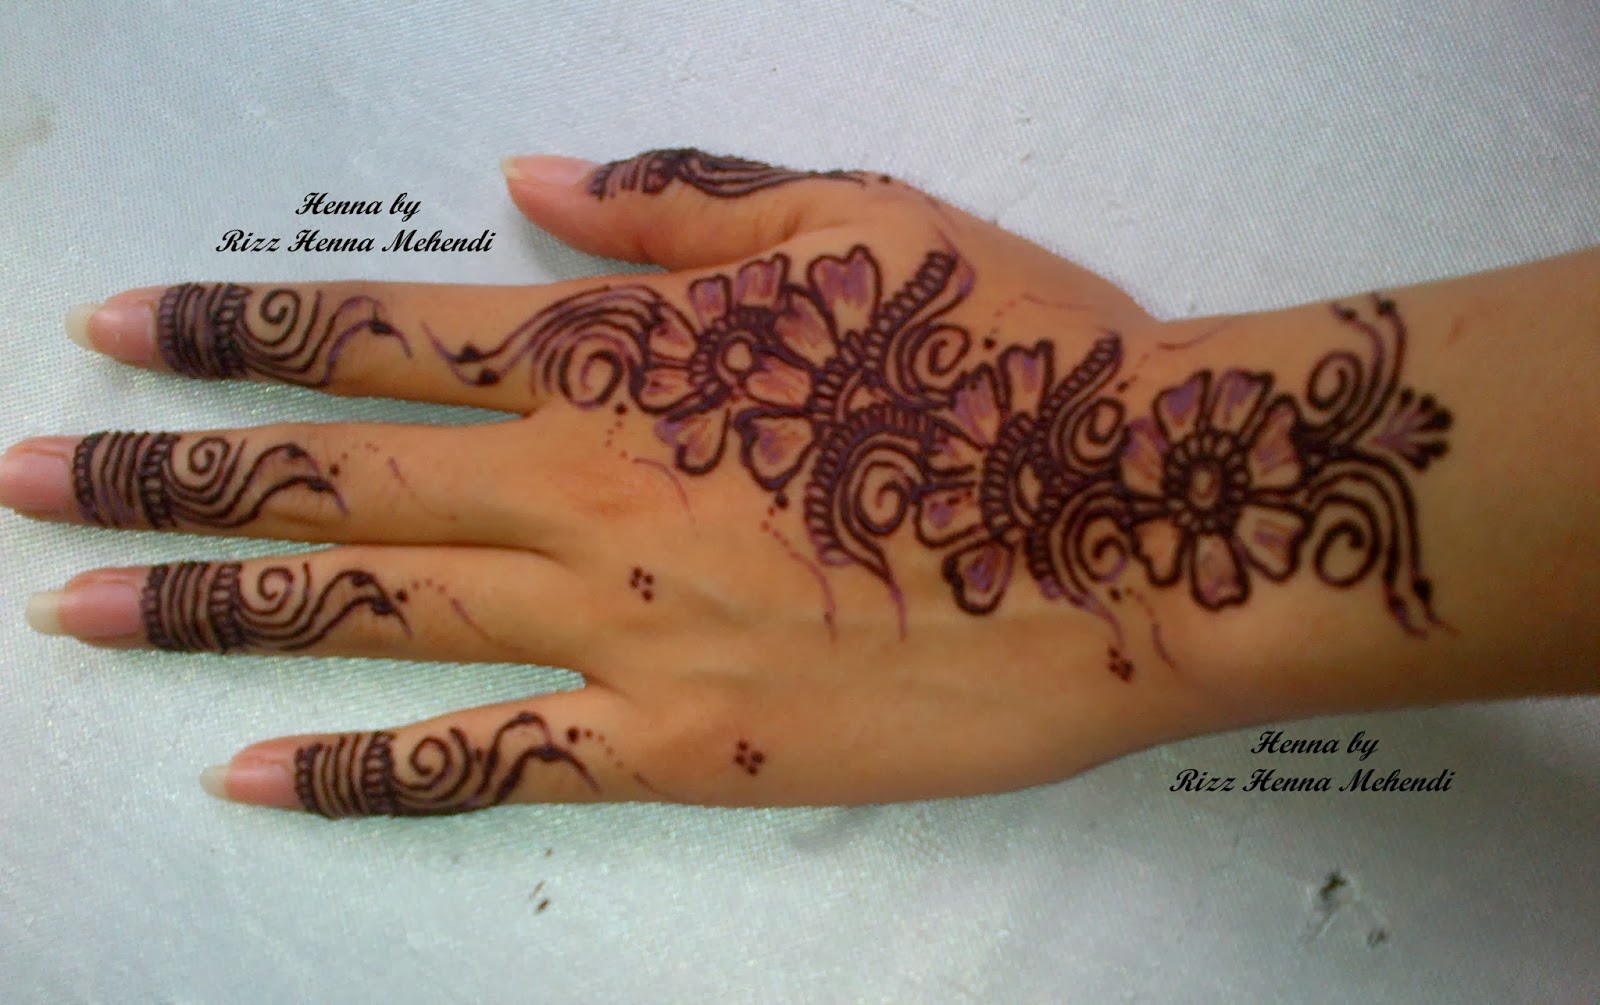 Contoh Gambar Henna Mahendi Balehenna